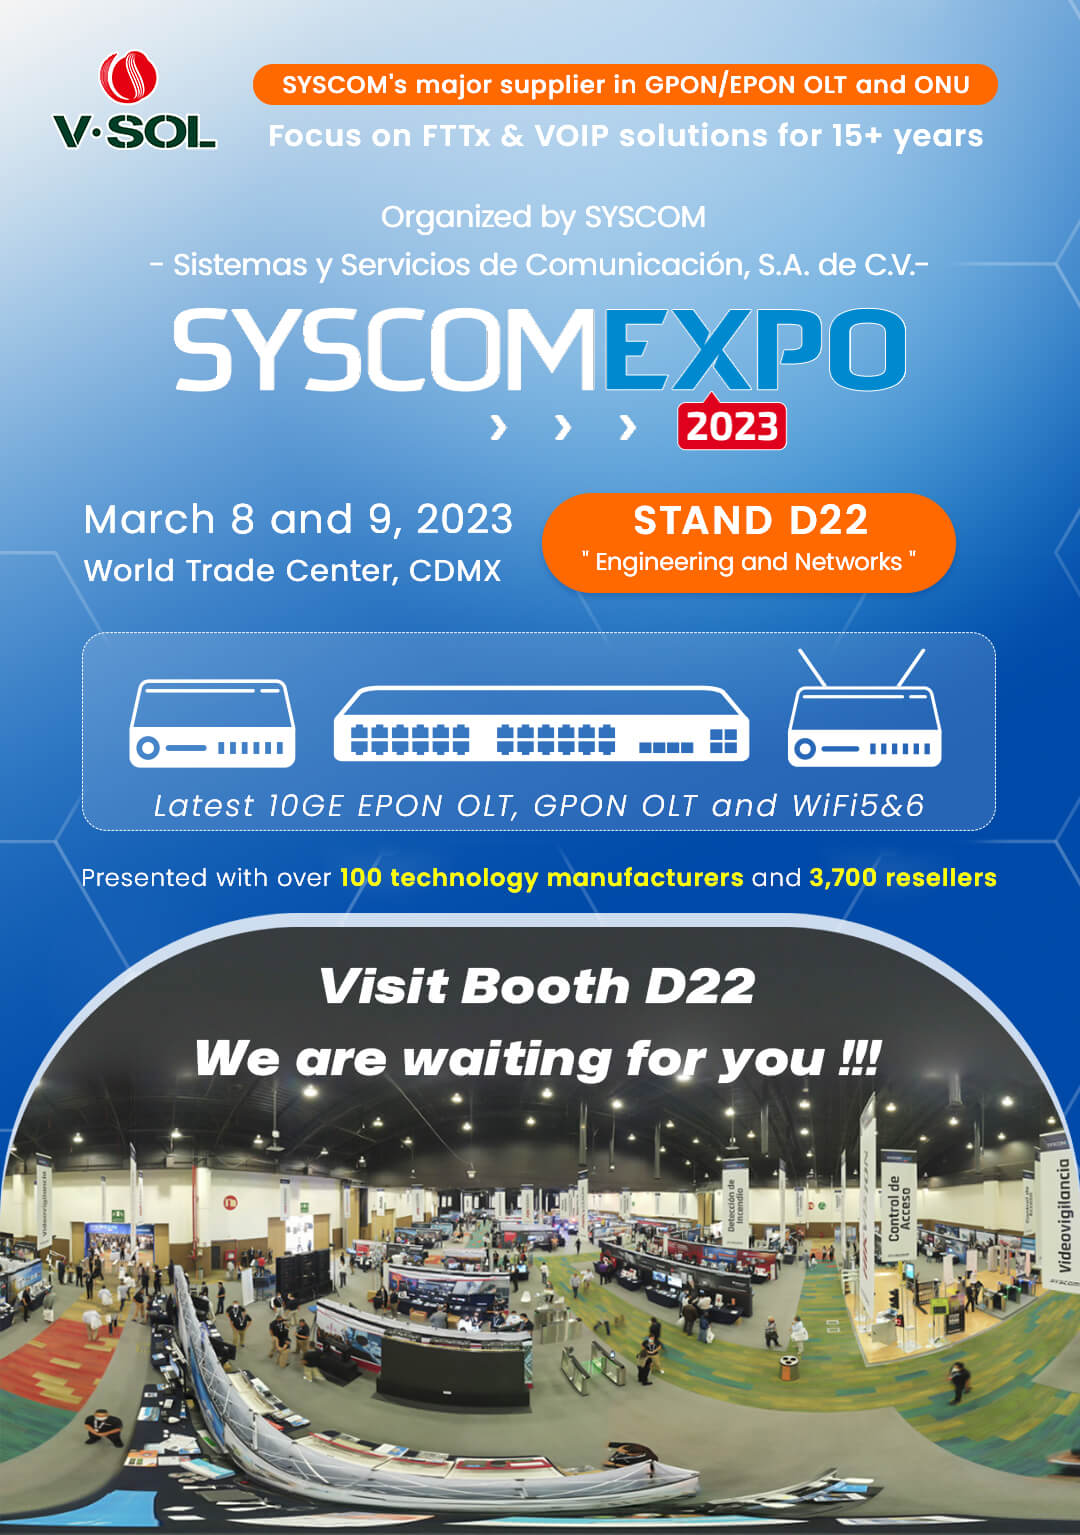 ¡SYSCOM EXPO 2023 se acerca! Le invitamos a visitar V-SOL en el stand D22!